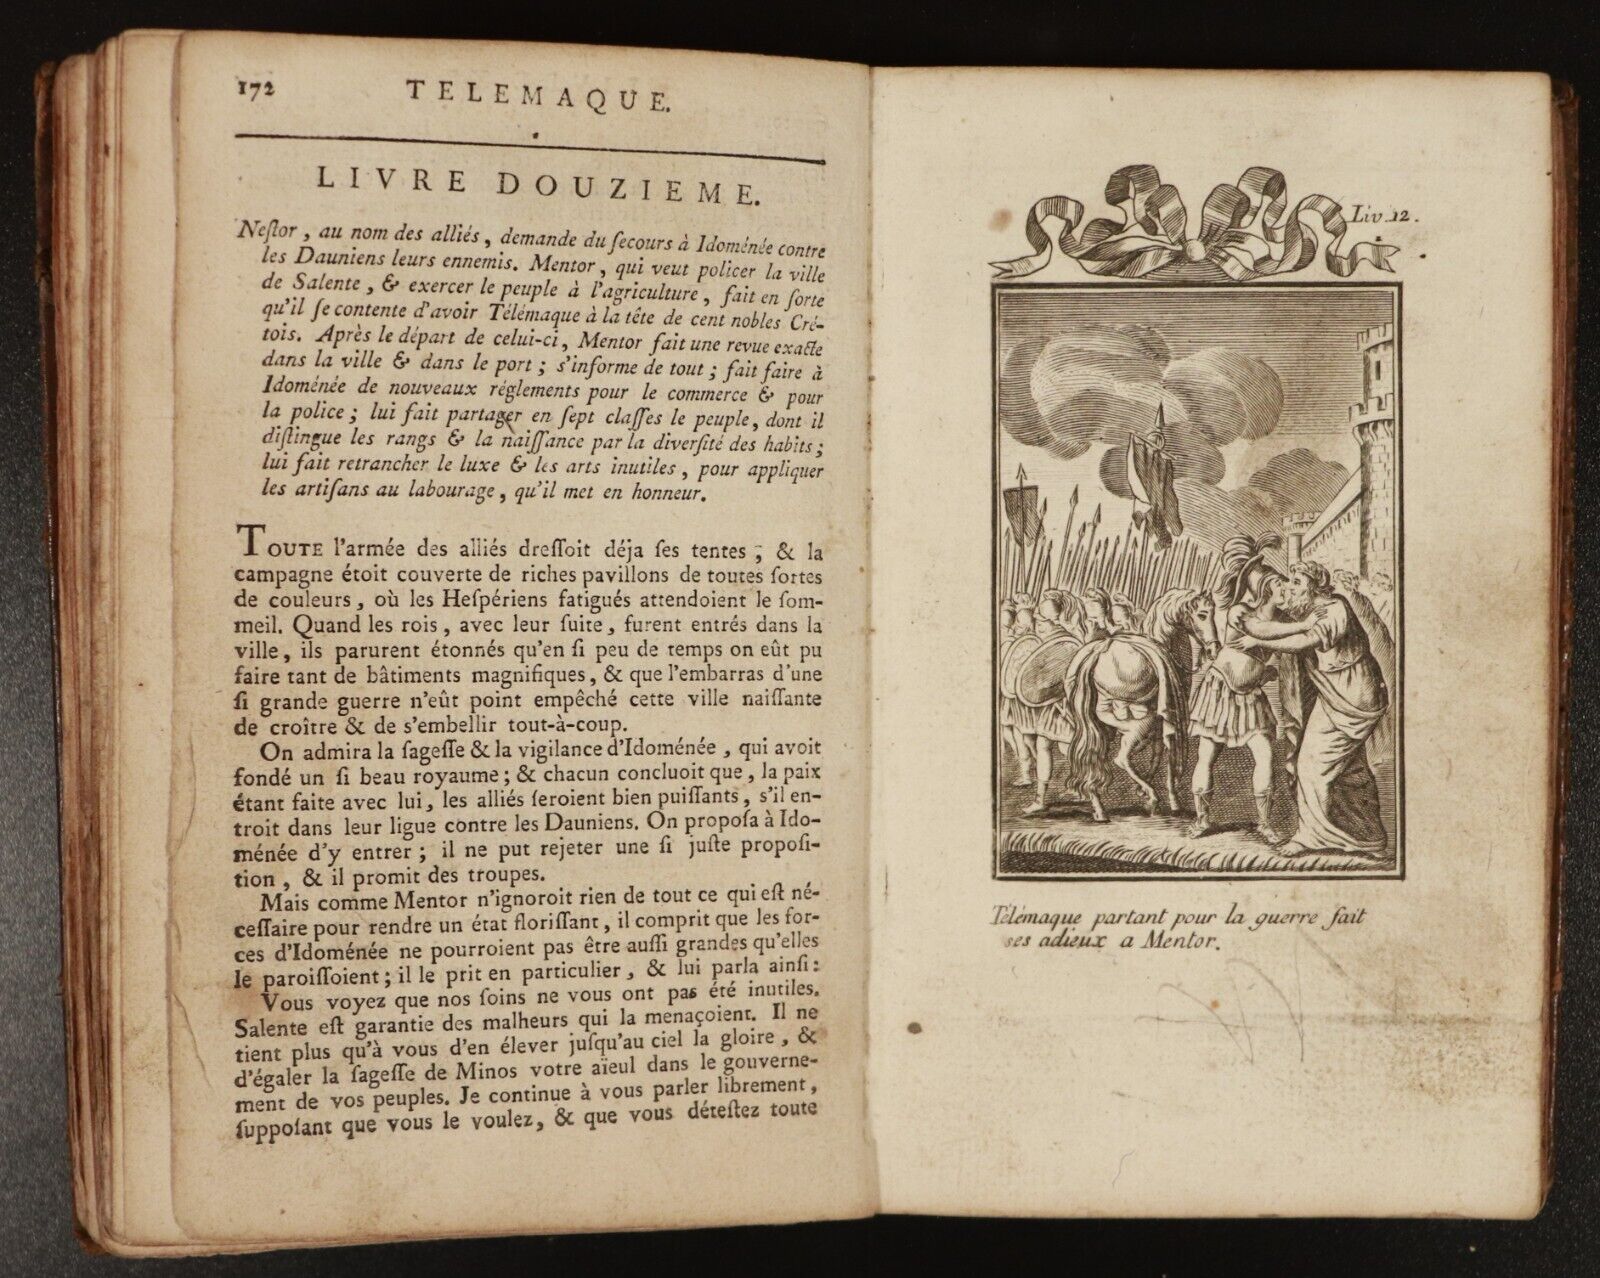 1804 Les Aventures de Télémaque by M. De Fenelon Antiquarian Literature Book